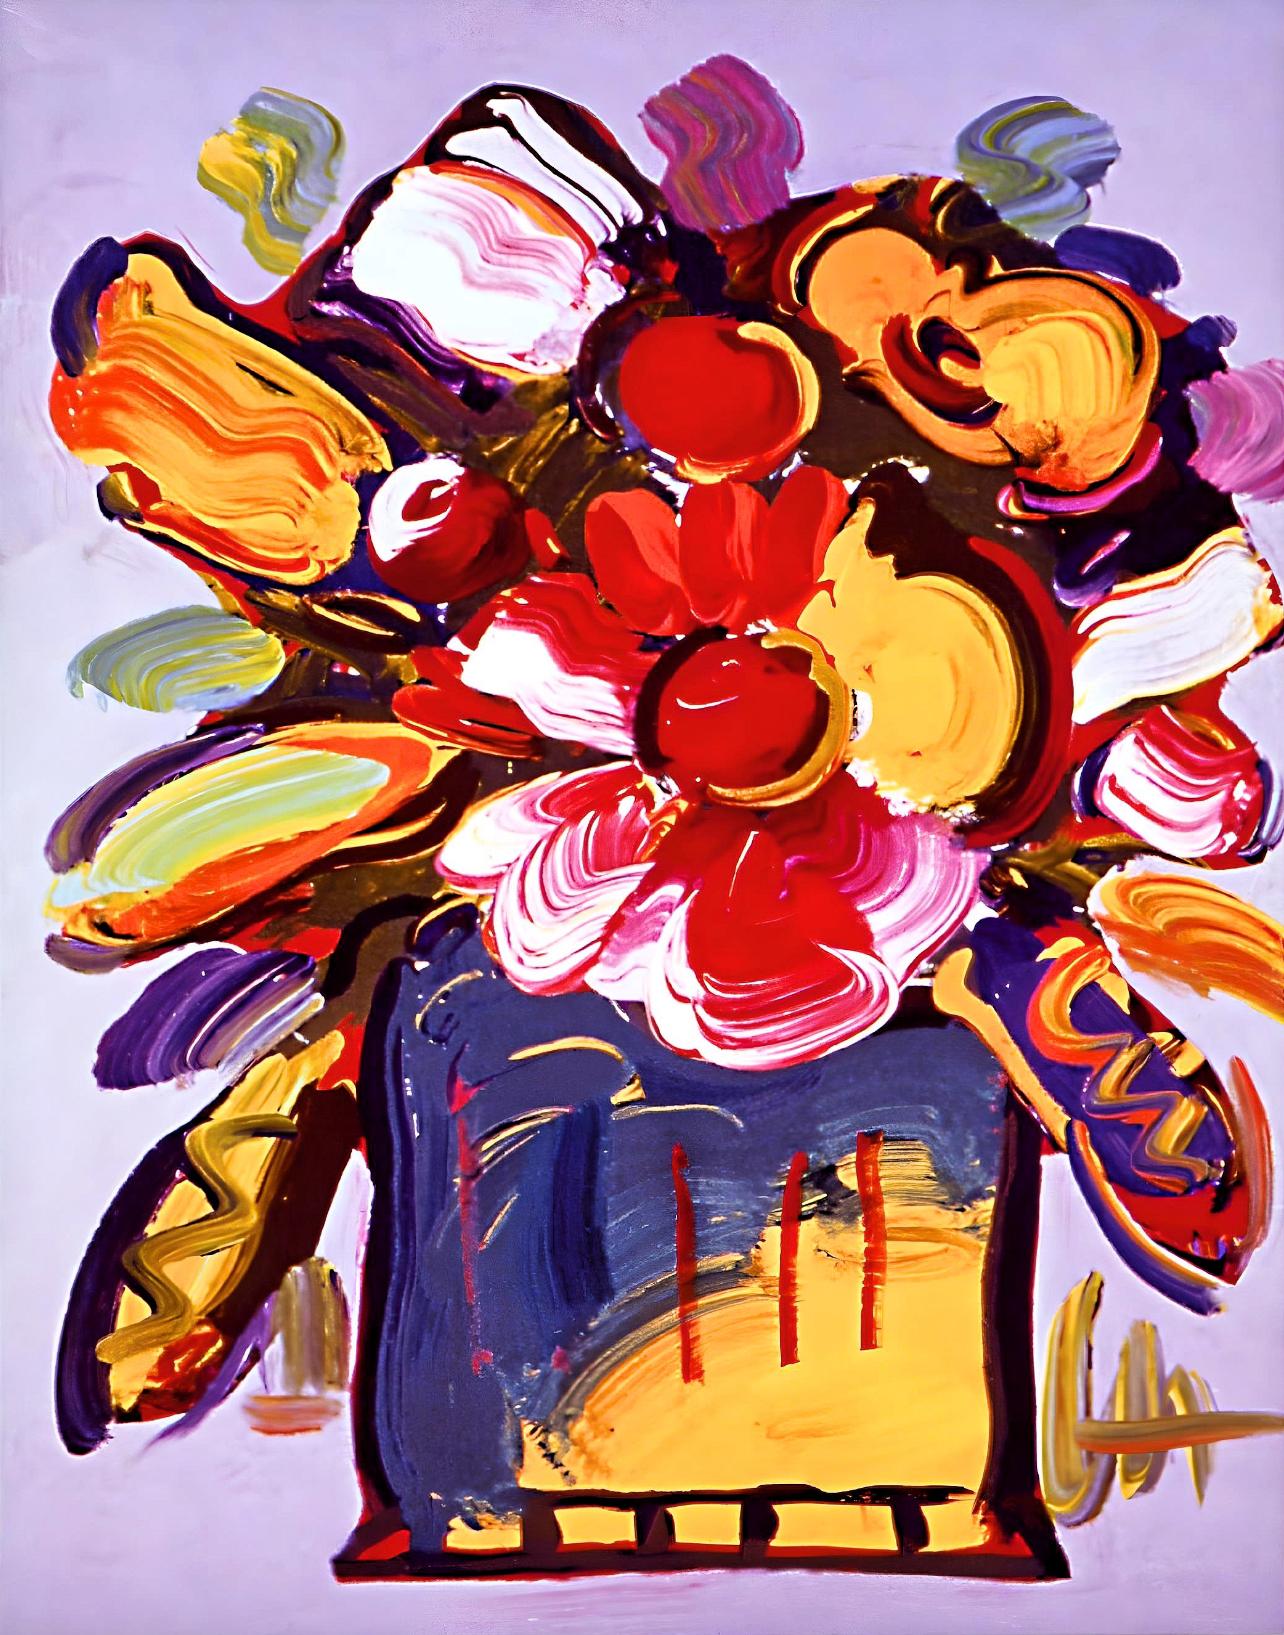 Künstler: Peter Max (1937)
Titel: Abstrakte Blumen II
Jahr: 2007
Auflage: 500/500, plus Probedrucke
Medium: Lithographie auf Archivierungspapier
Größe: 8 x 6 Zoll
Zustand: Ausgezeichnet
Beschriftung: Signiert und nummeriert vom